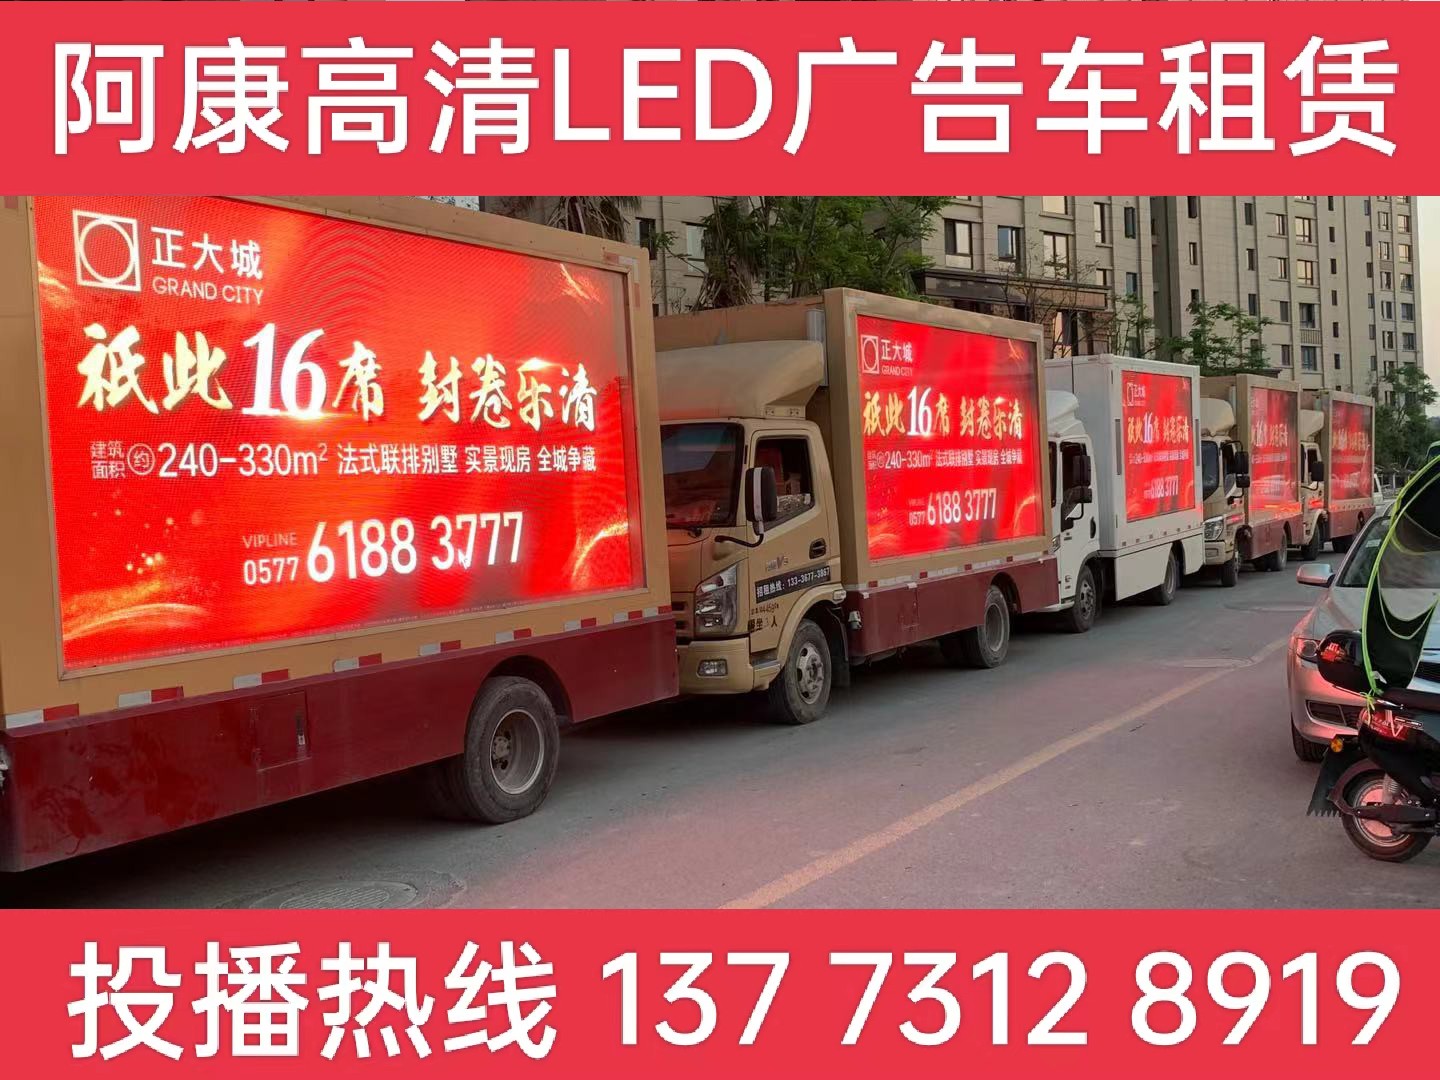 马鞍山LED广告车出租